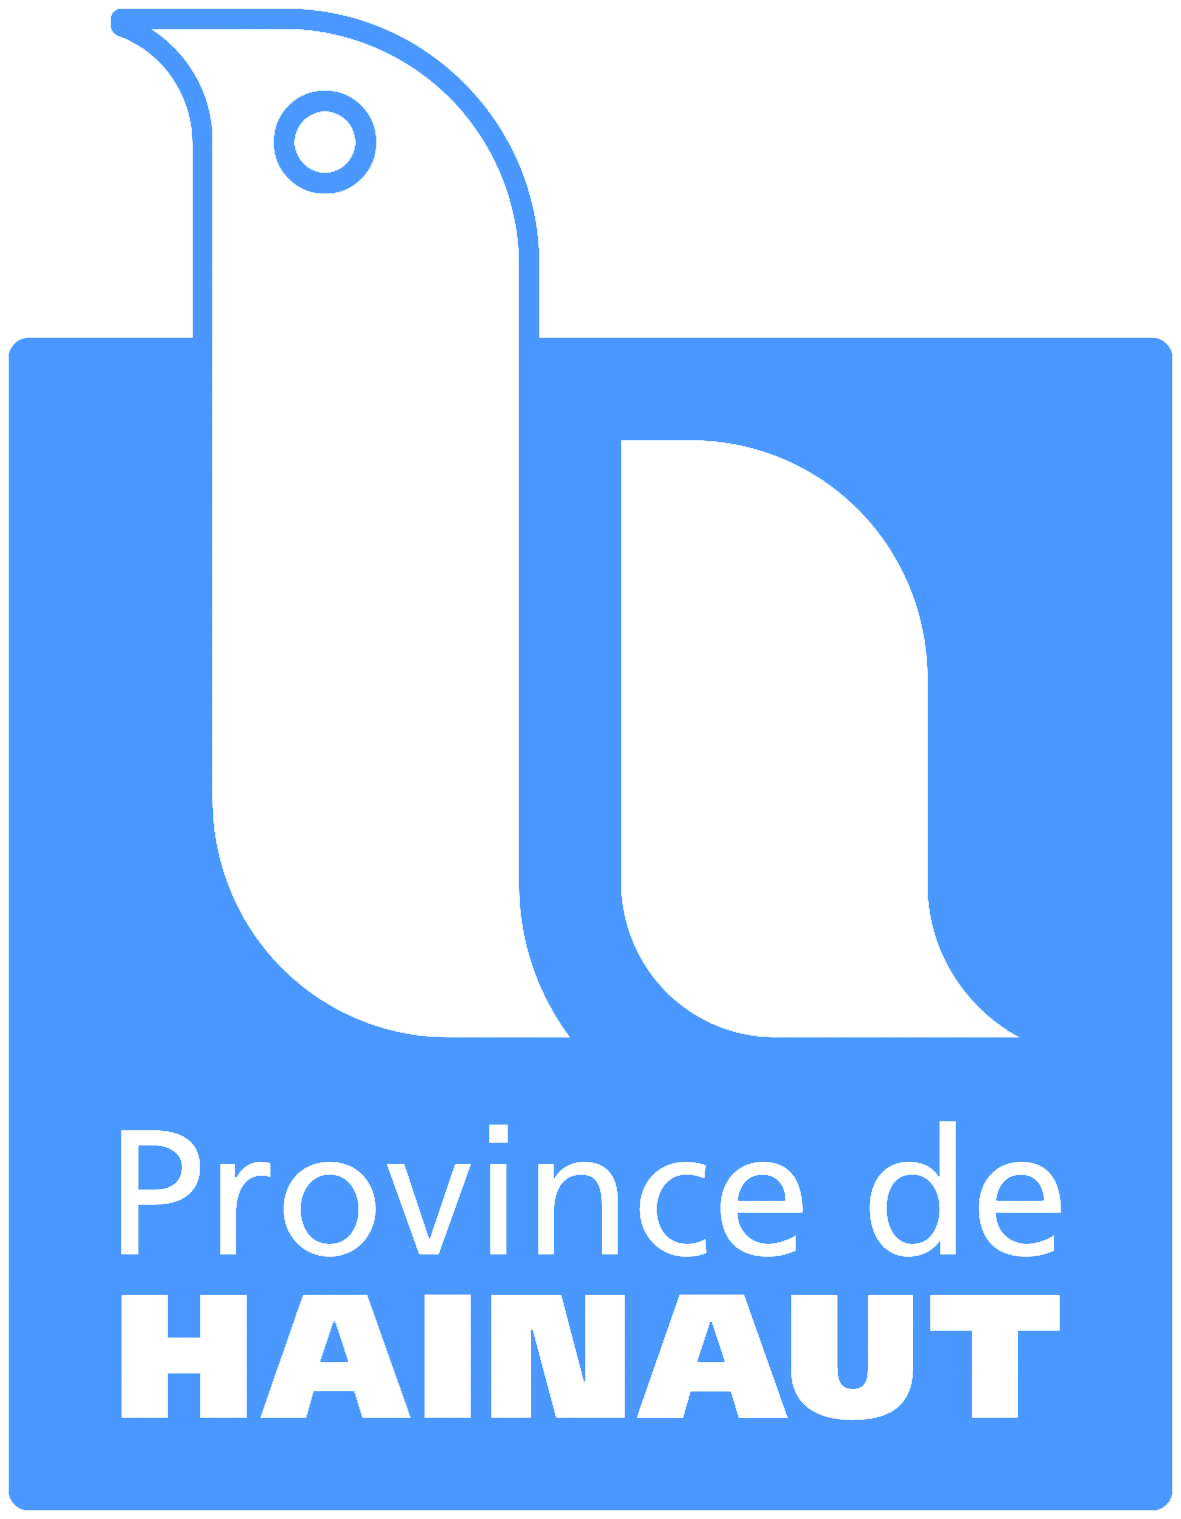 Province de Hainaut - Hainaut Culture Tourisme